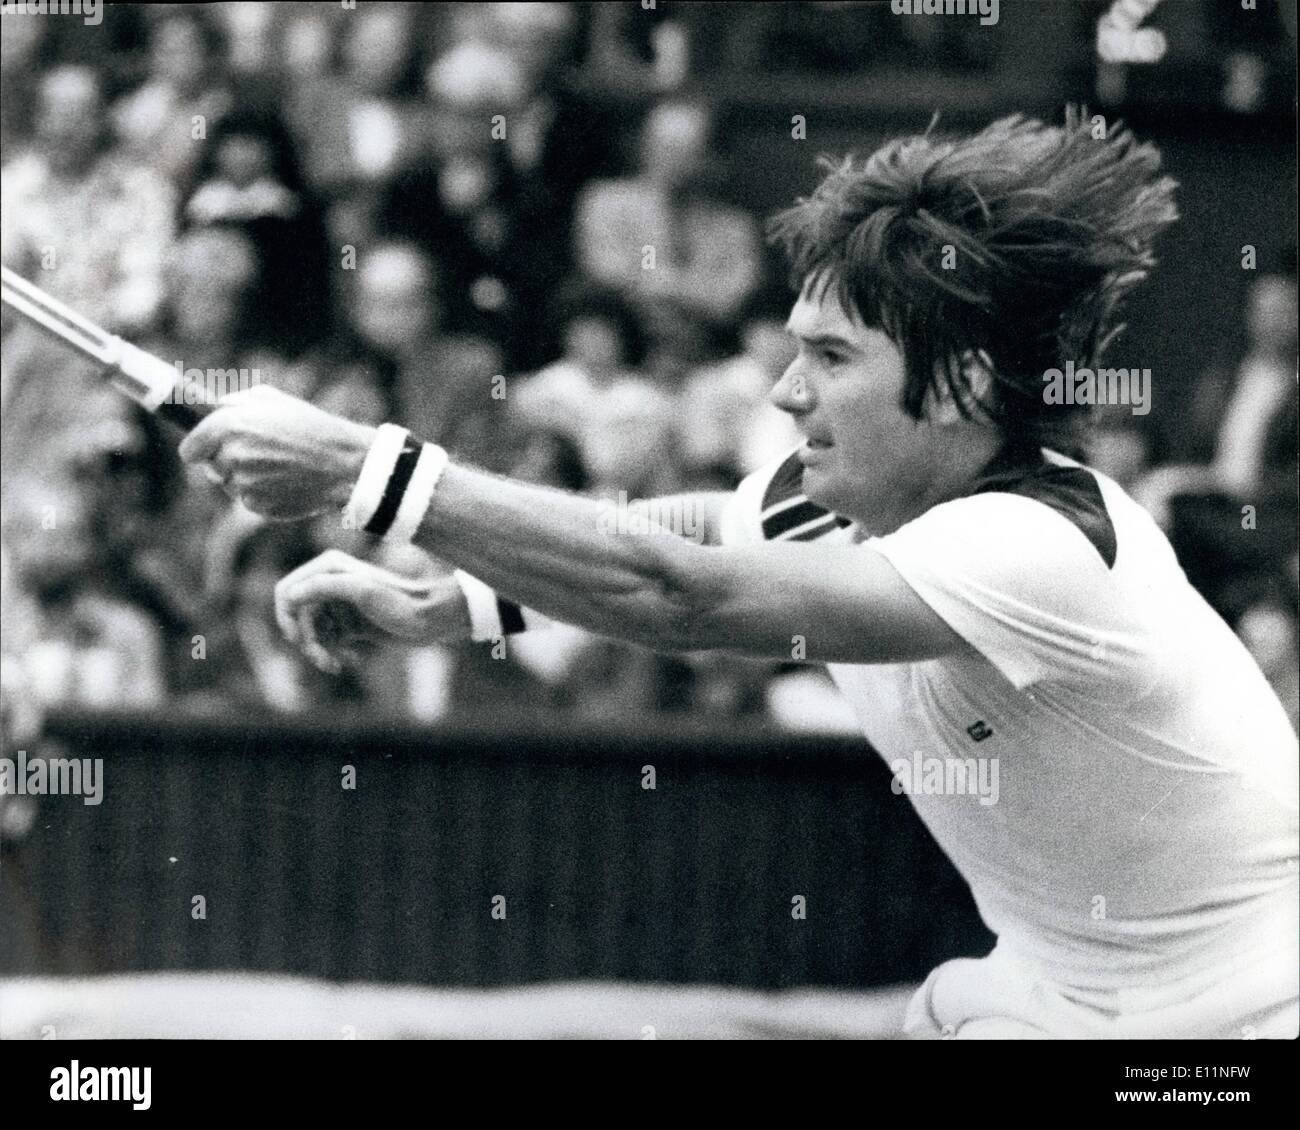 Lug. 07, 1979 - Wimbledon Tennis Connors batte Cox: mostra fotografica di Jimmy Connors usa il n. 3 seme visto in azione sul centro c Foto Stock